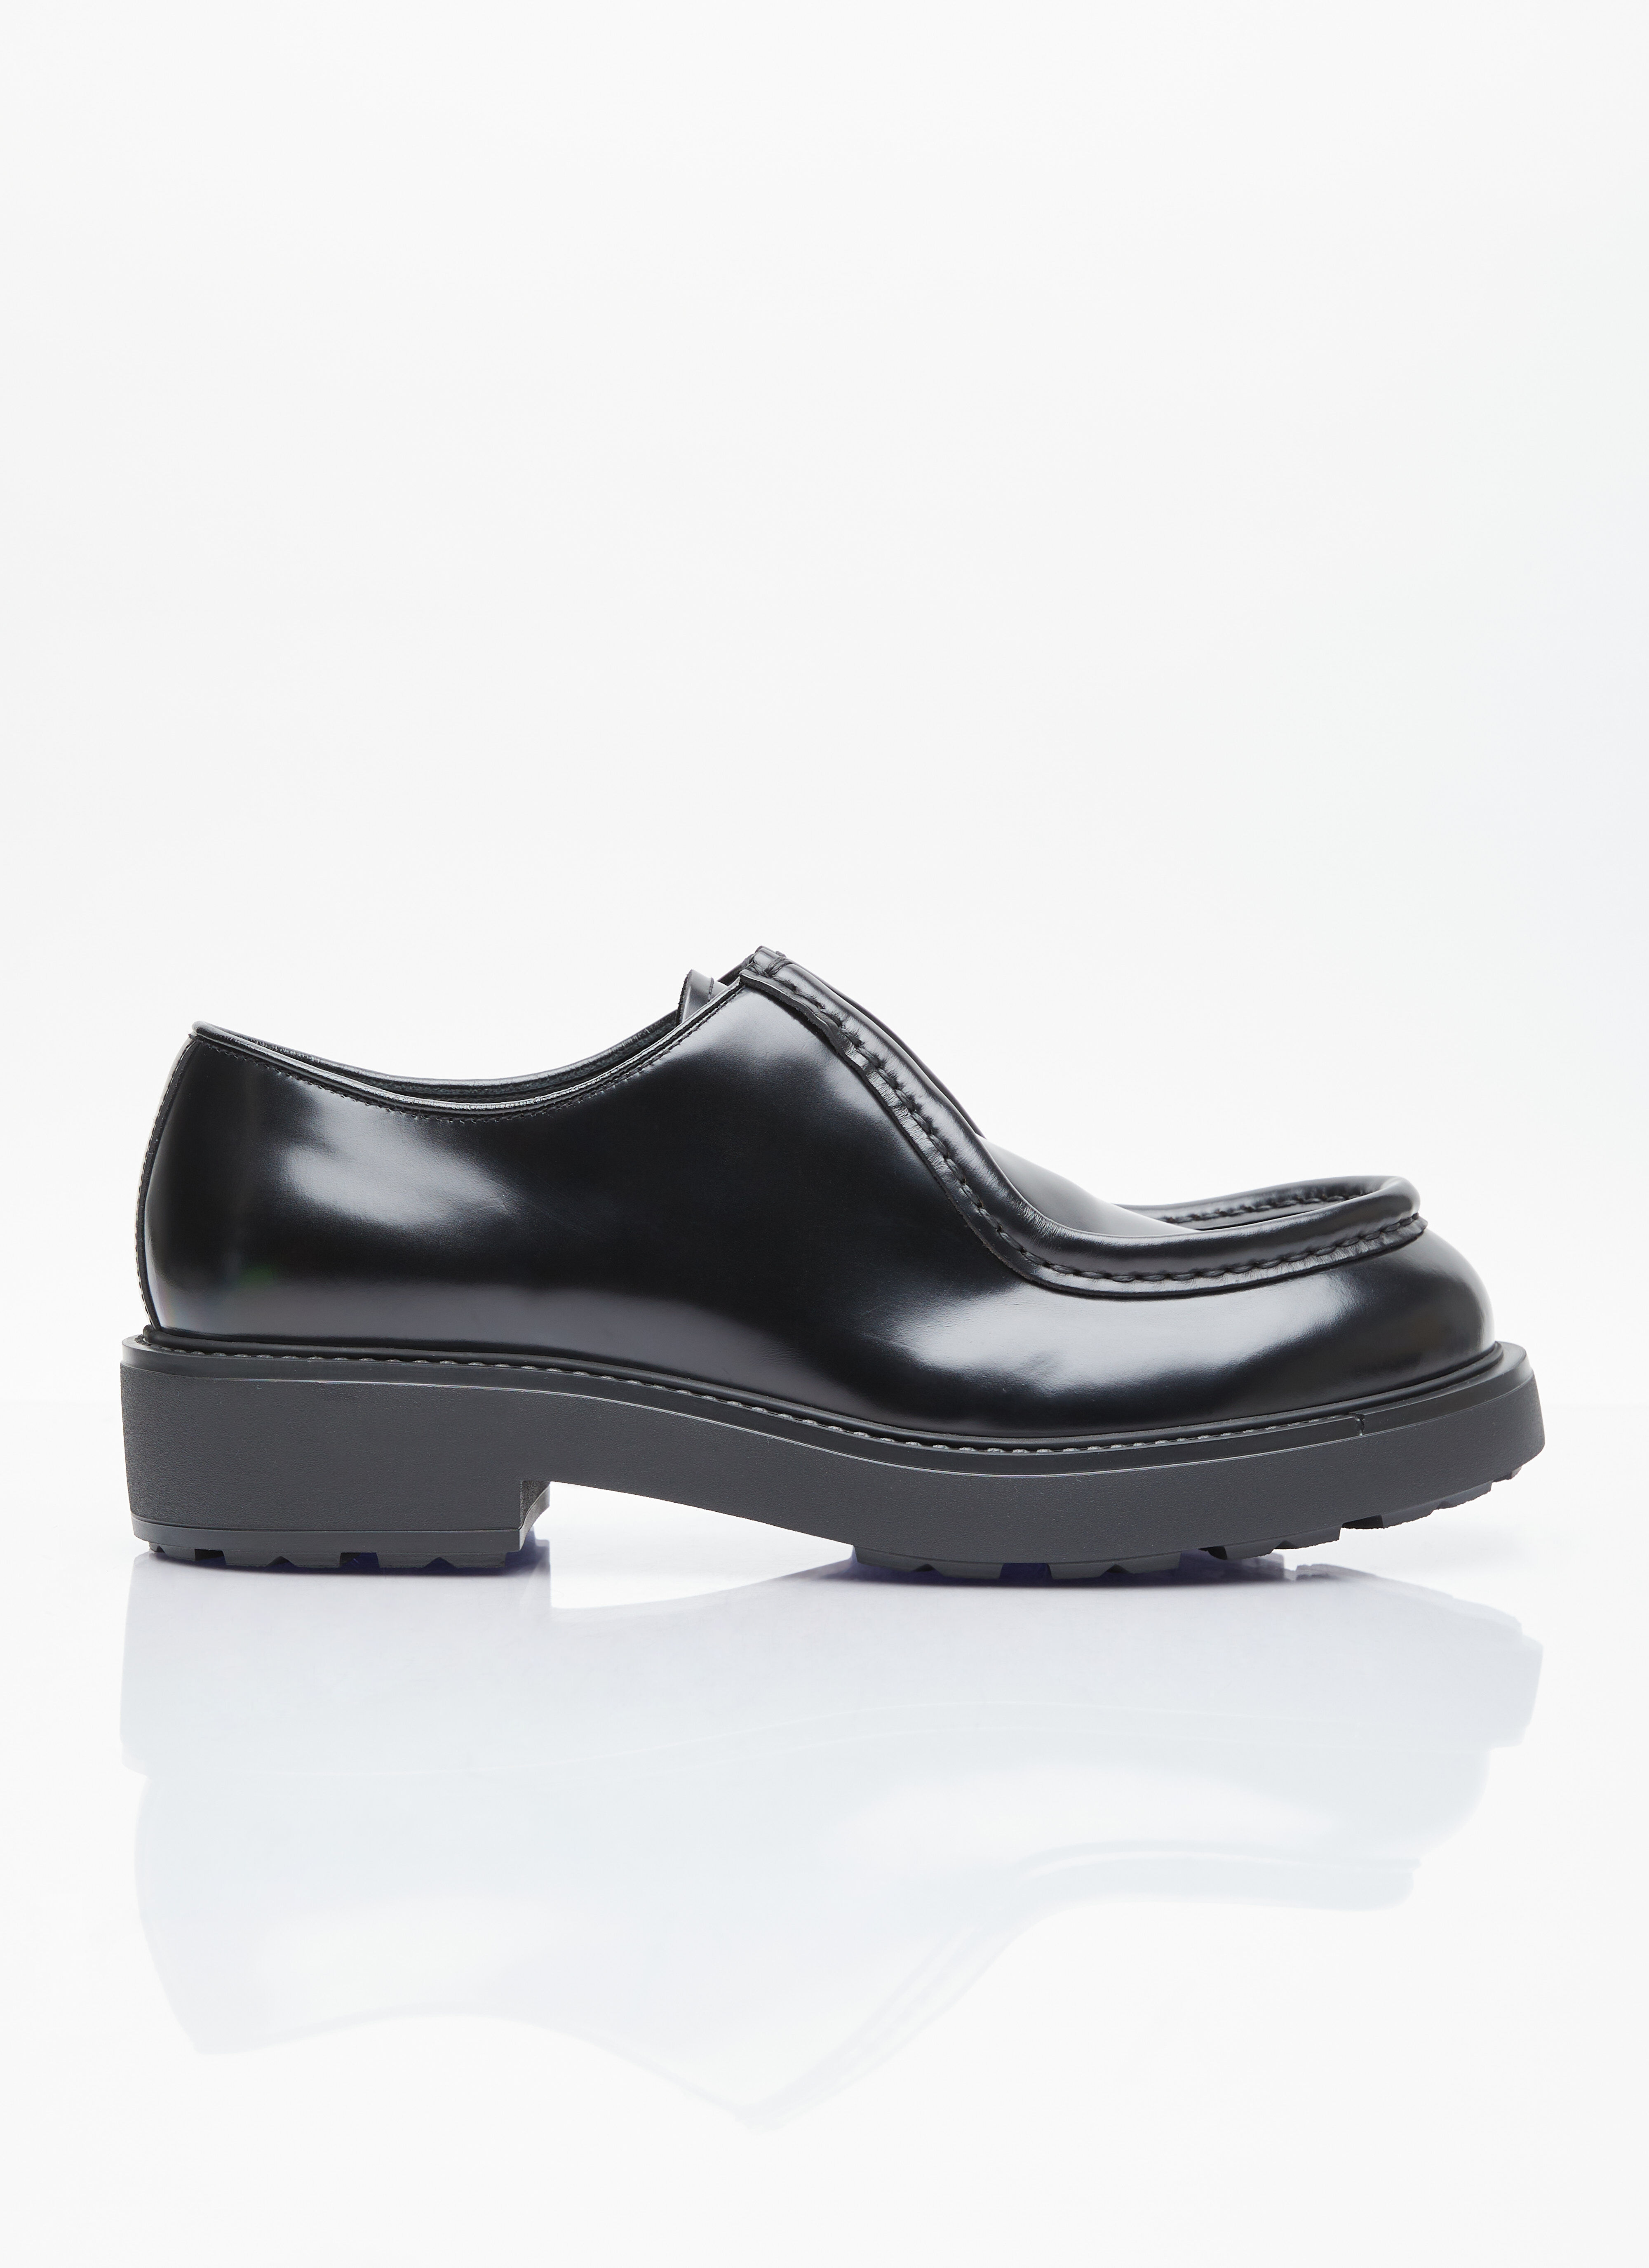 Comme des Garçons Homme Plus 系带皮鞋 Black hpl0156006